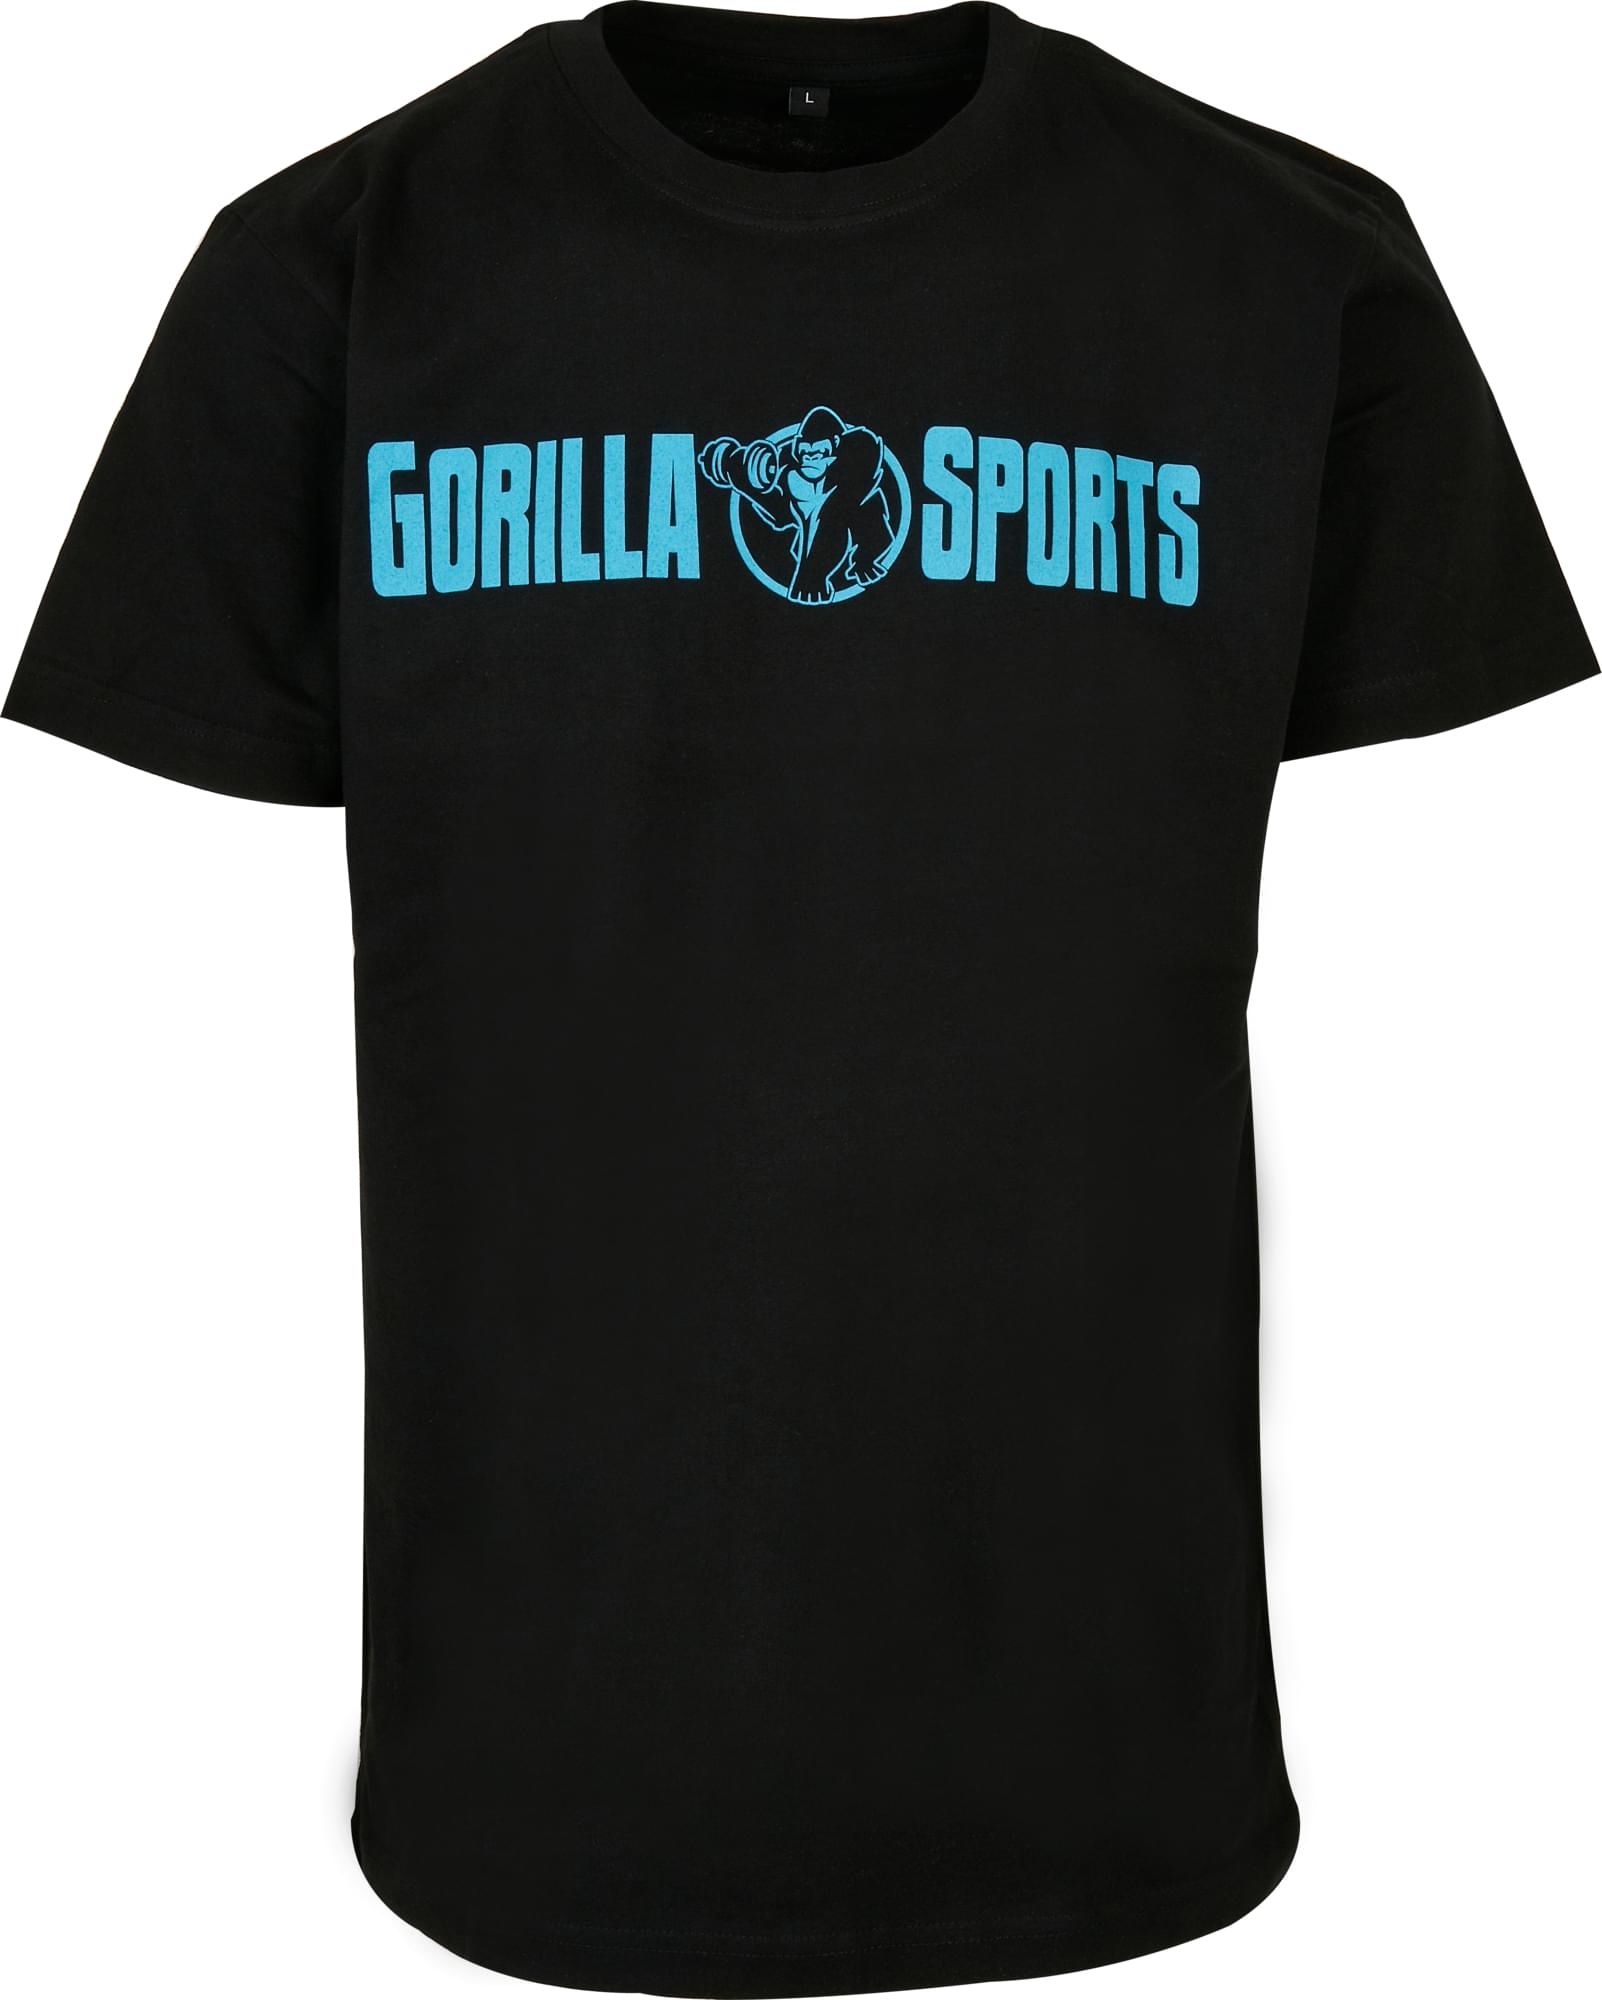 T-shirt Ã col rond - taille XL - coloris noir/turquoise